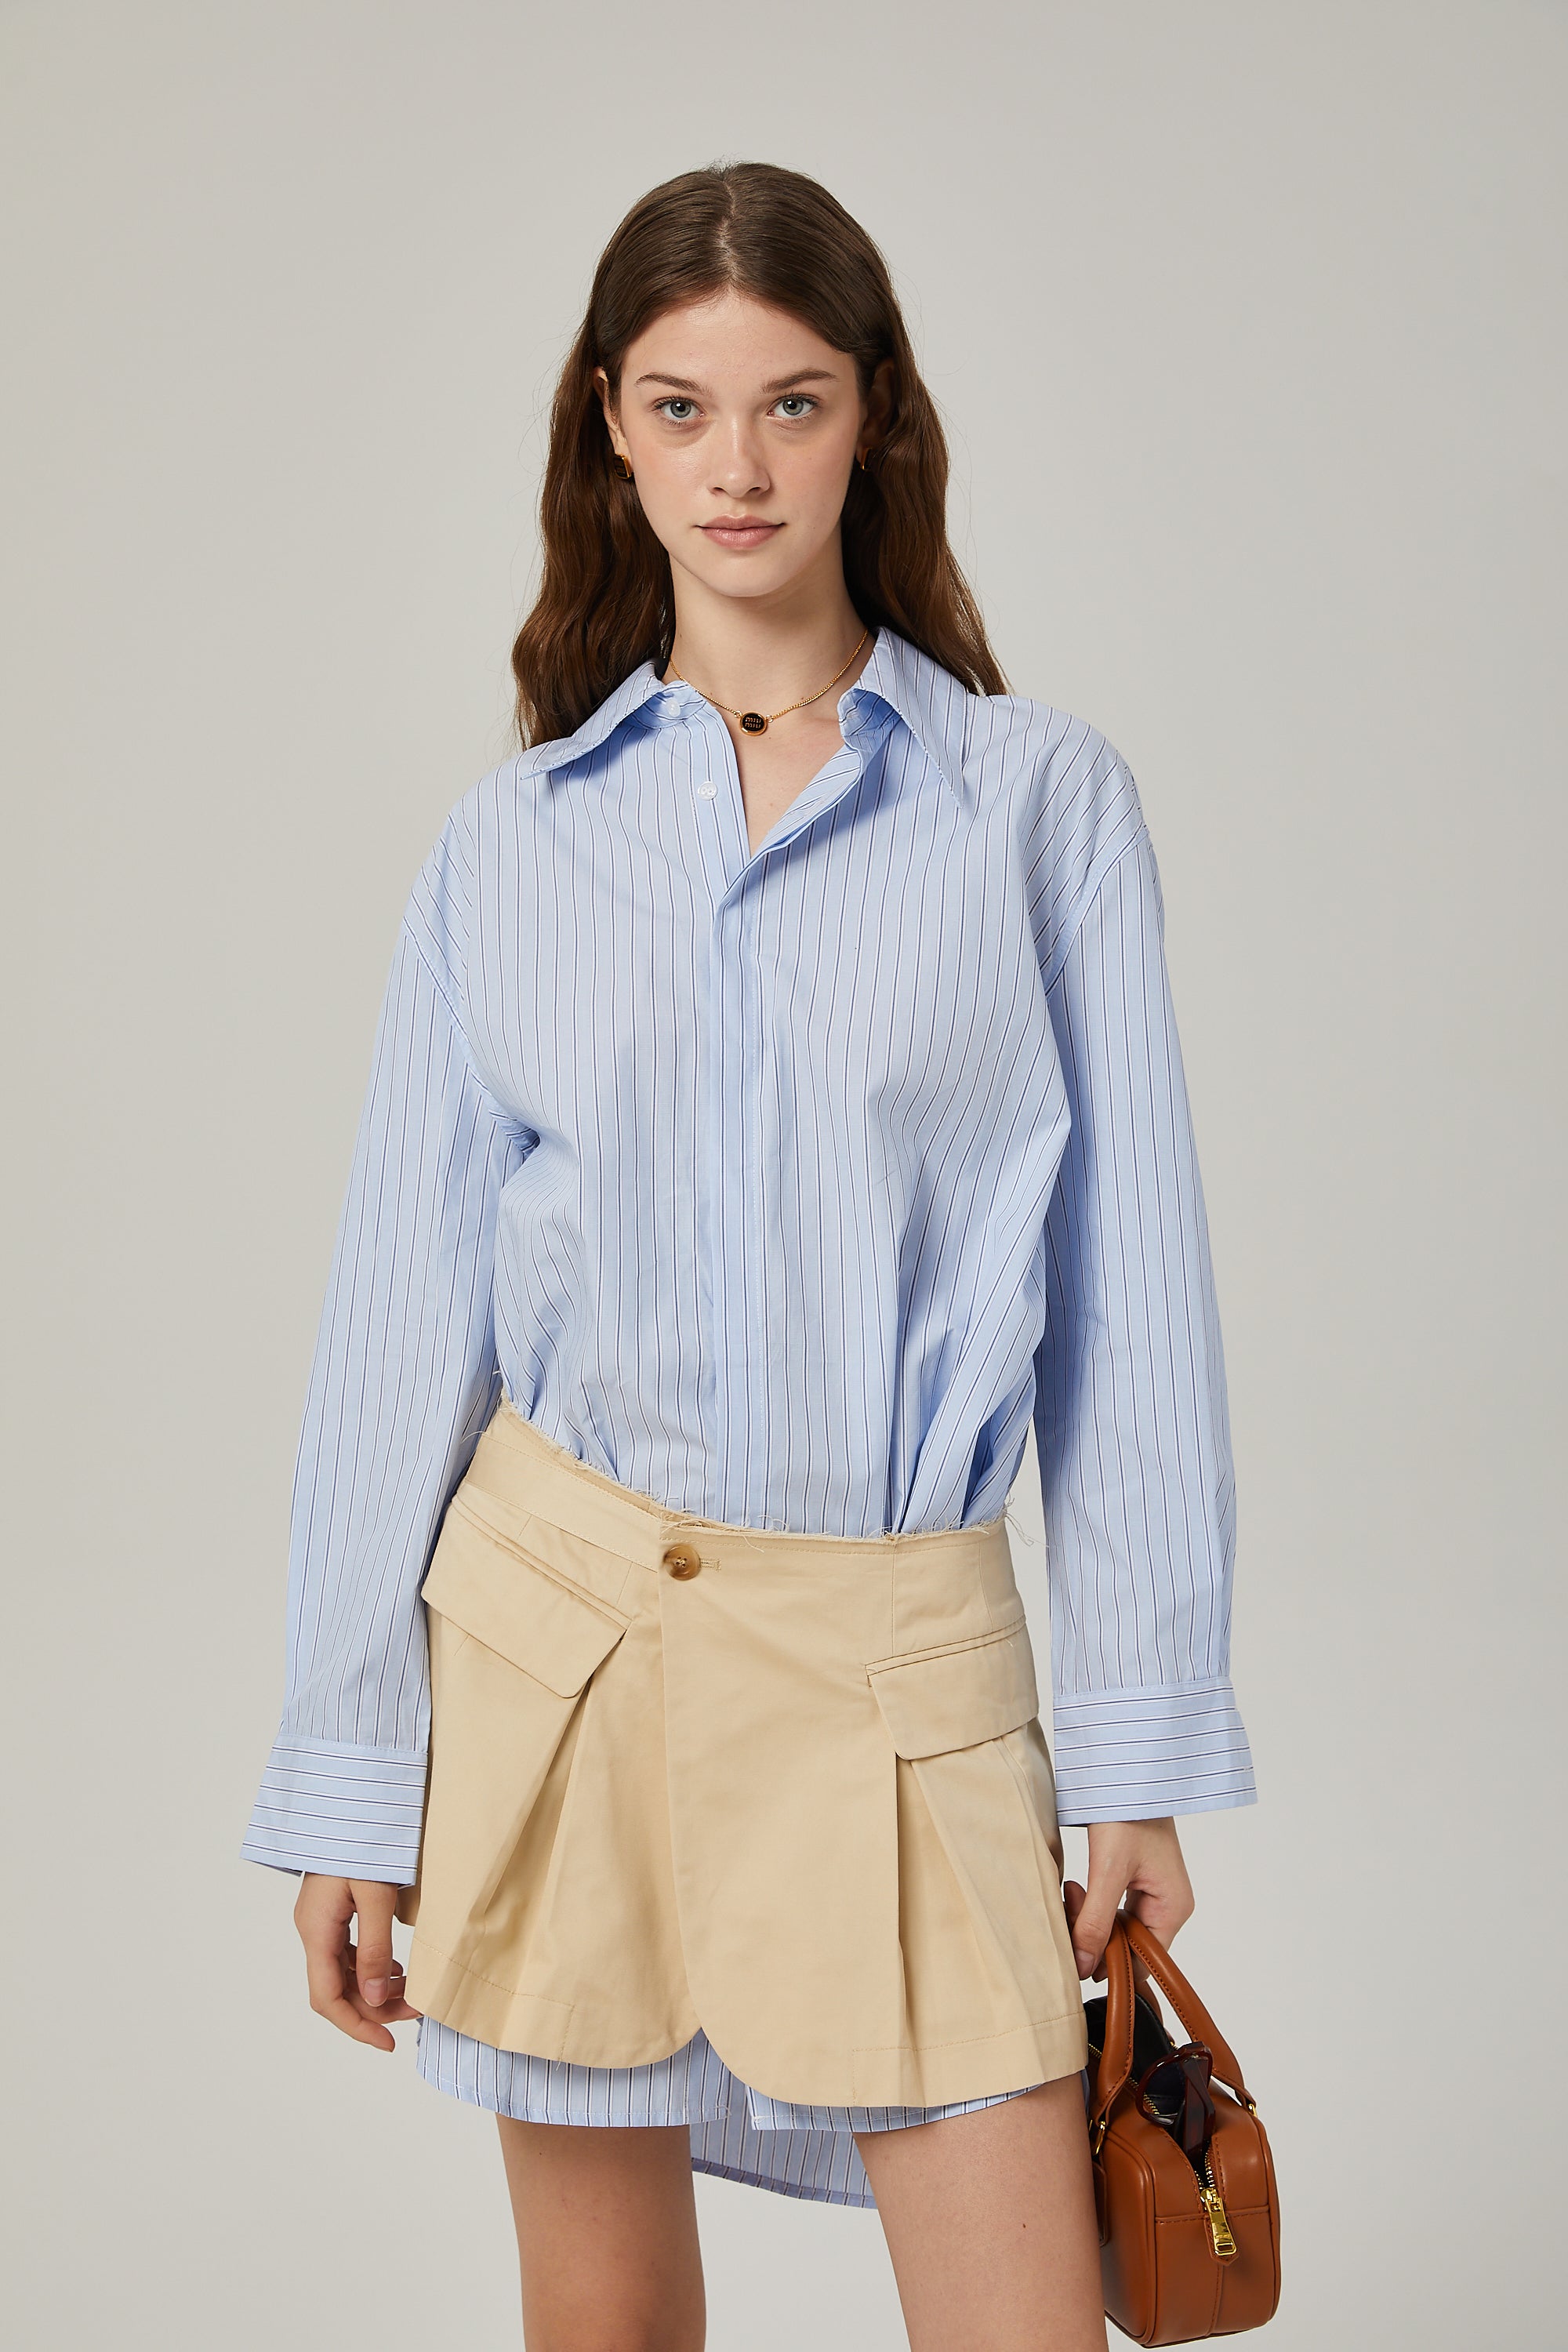 Gisèle deconstructed shirt & skirt matching set